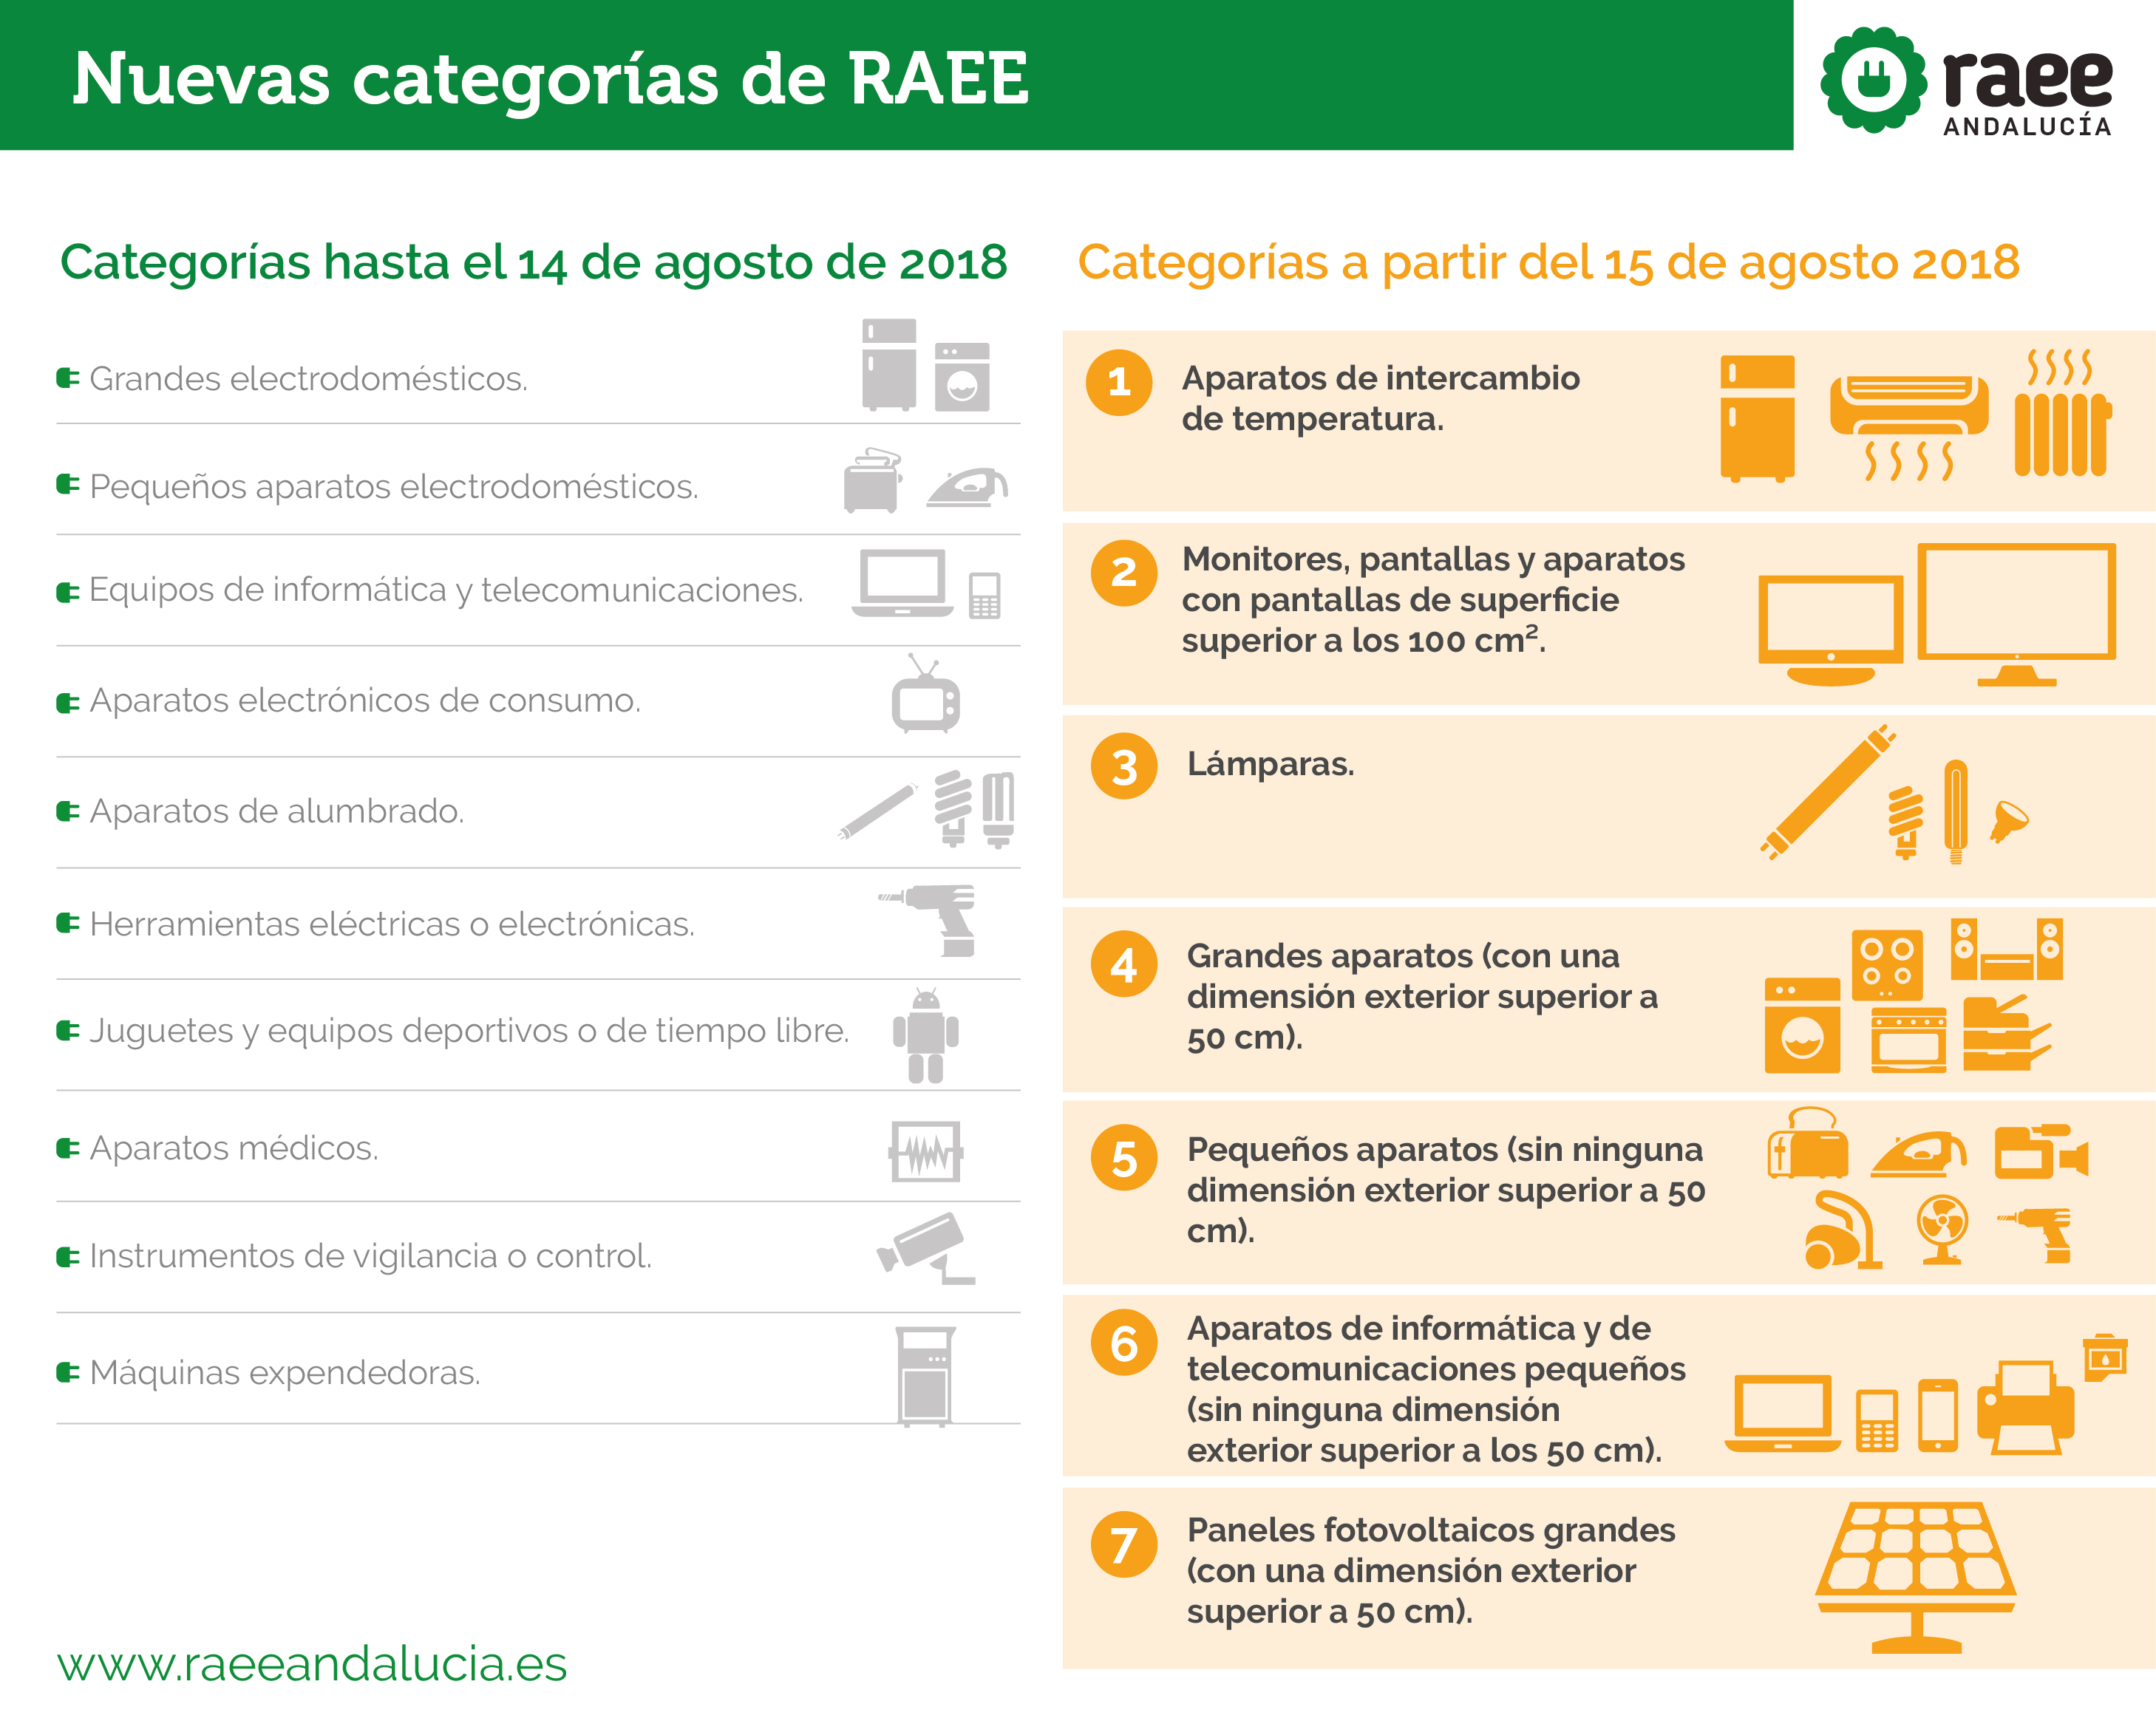 España: El Real Decreto establece 7 categorías de RAEE a partir del 15 de agosto de 2018